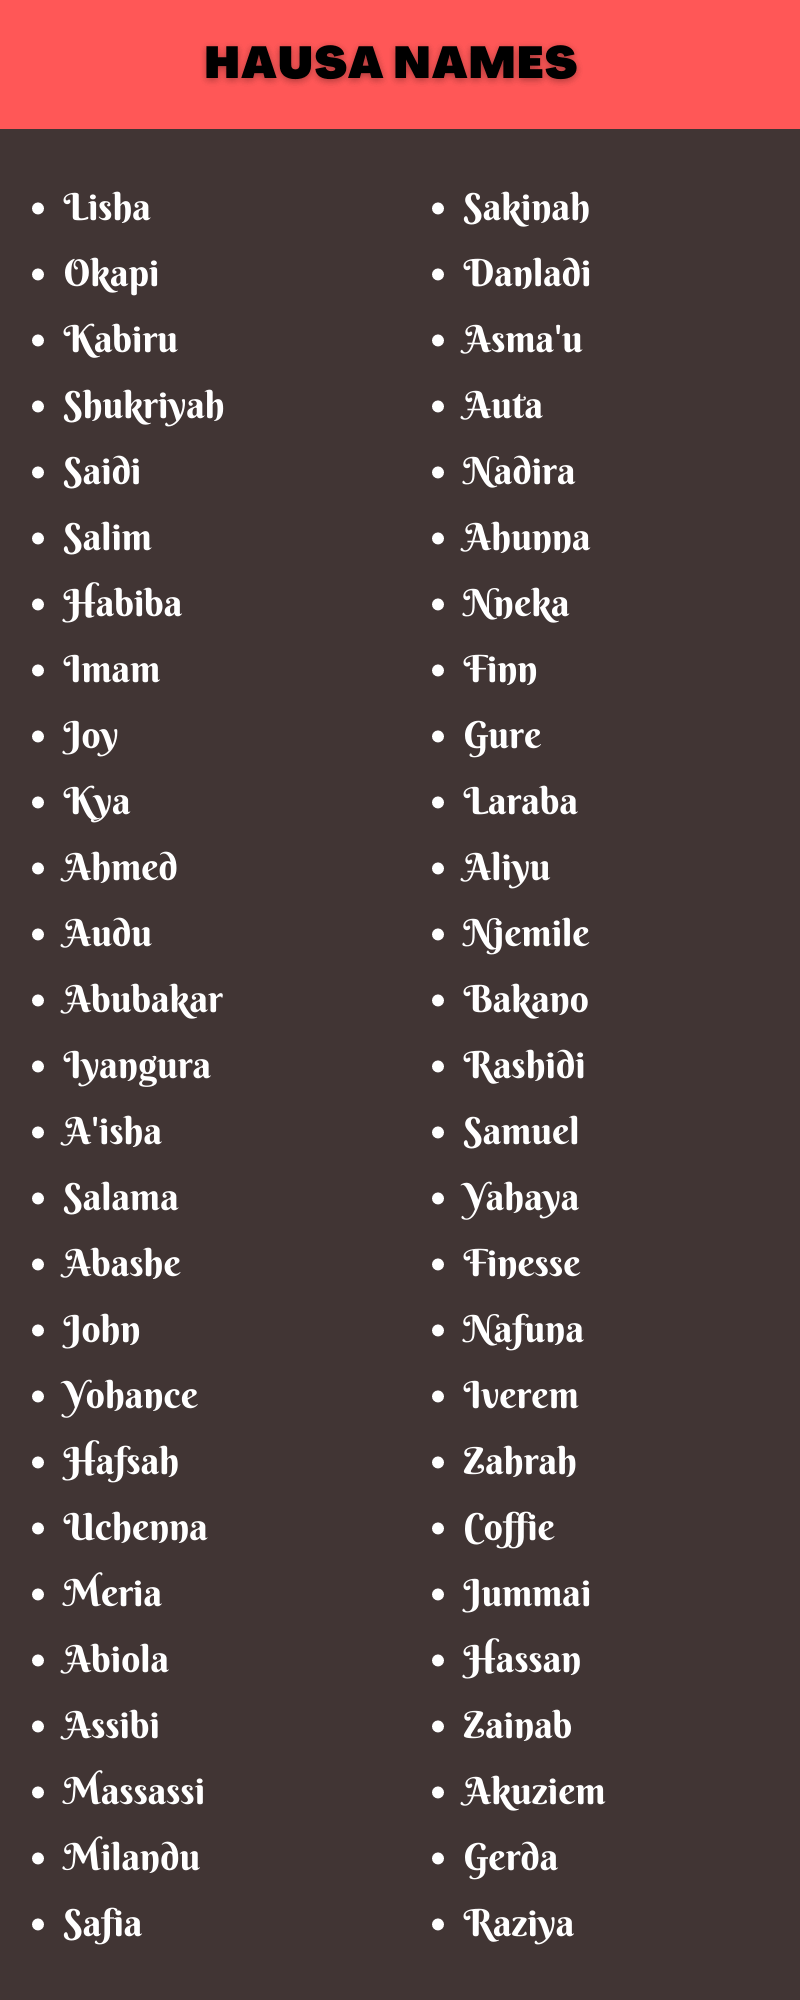 Hausa Names